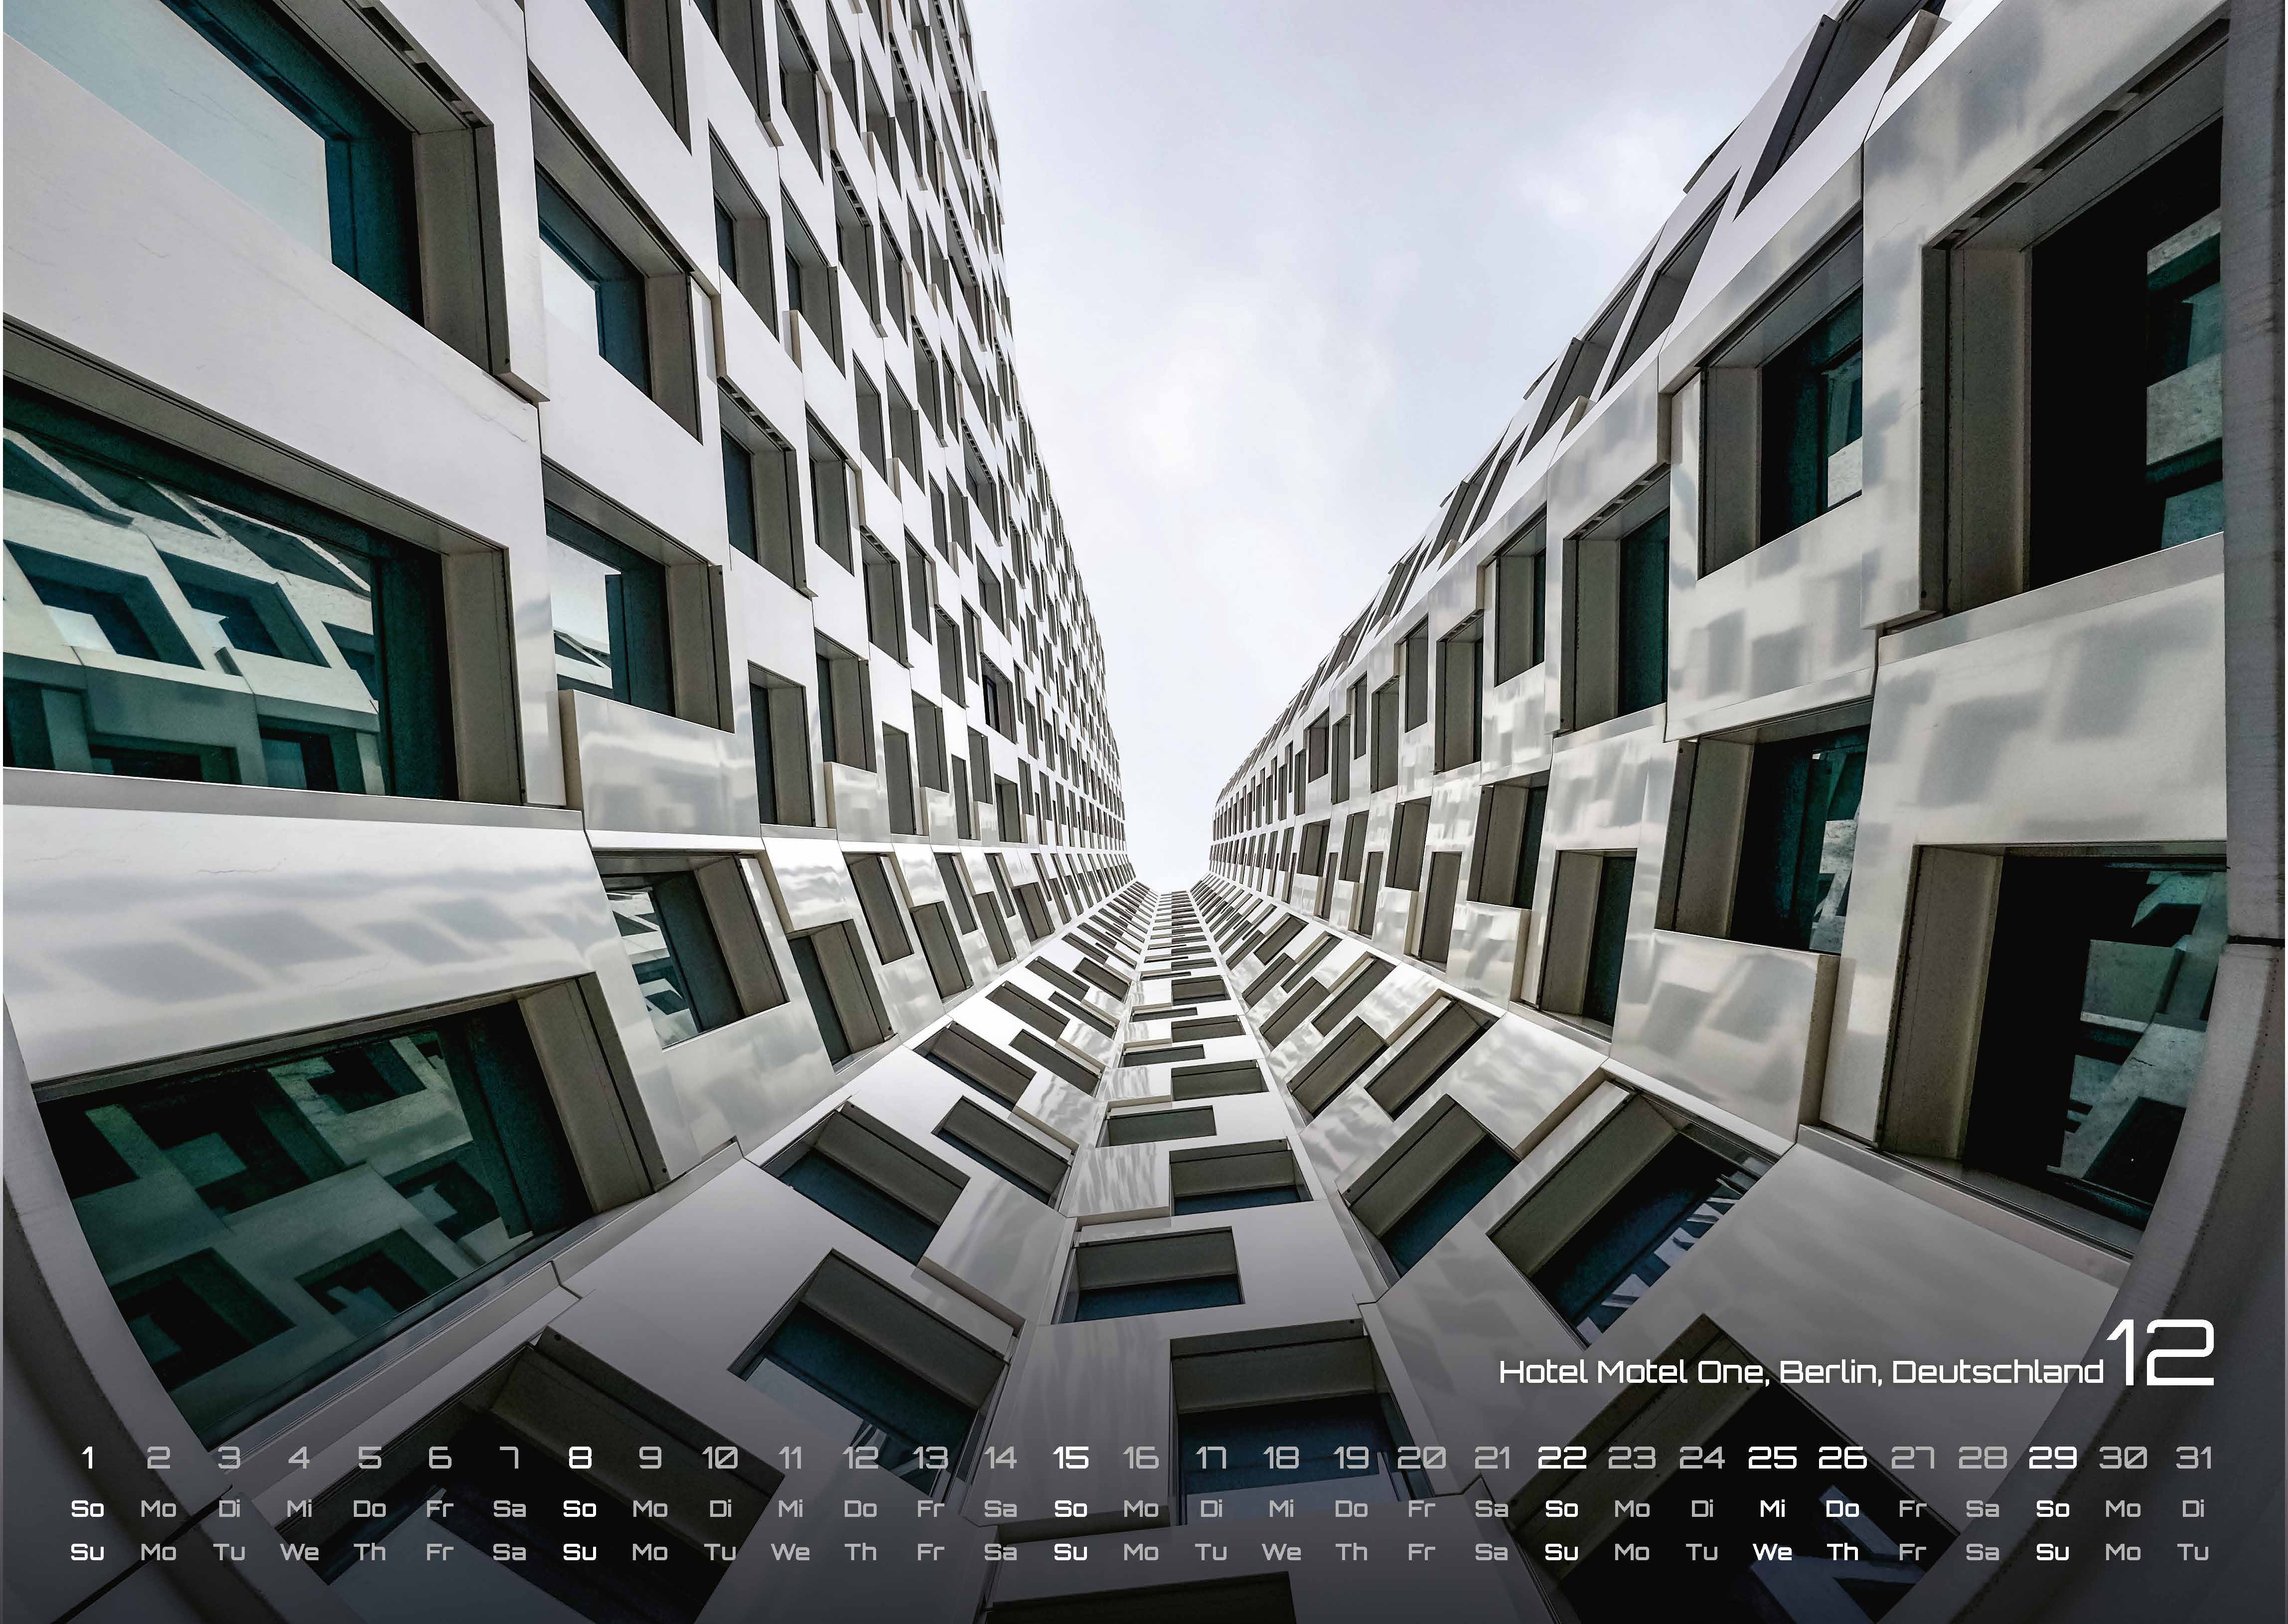 Architektur - faszinierende Baukunst - 2024 - Kalender